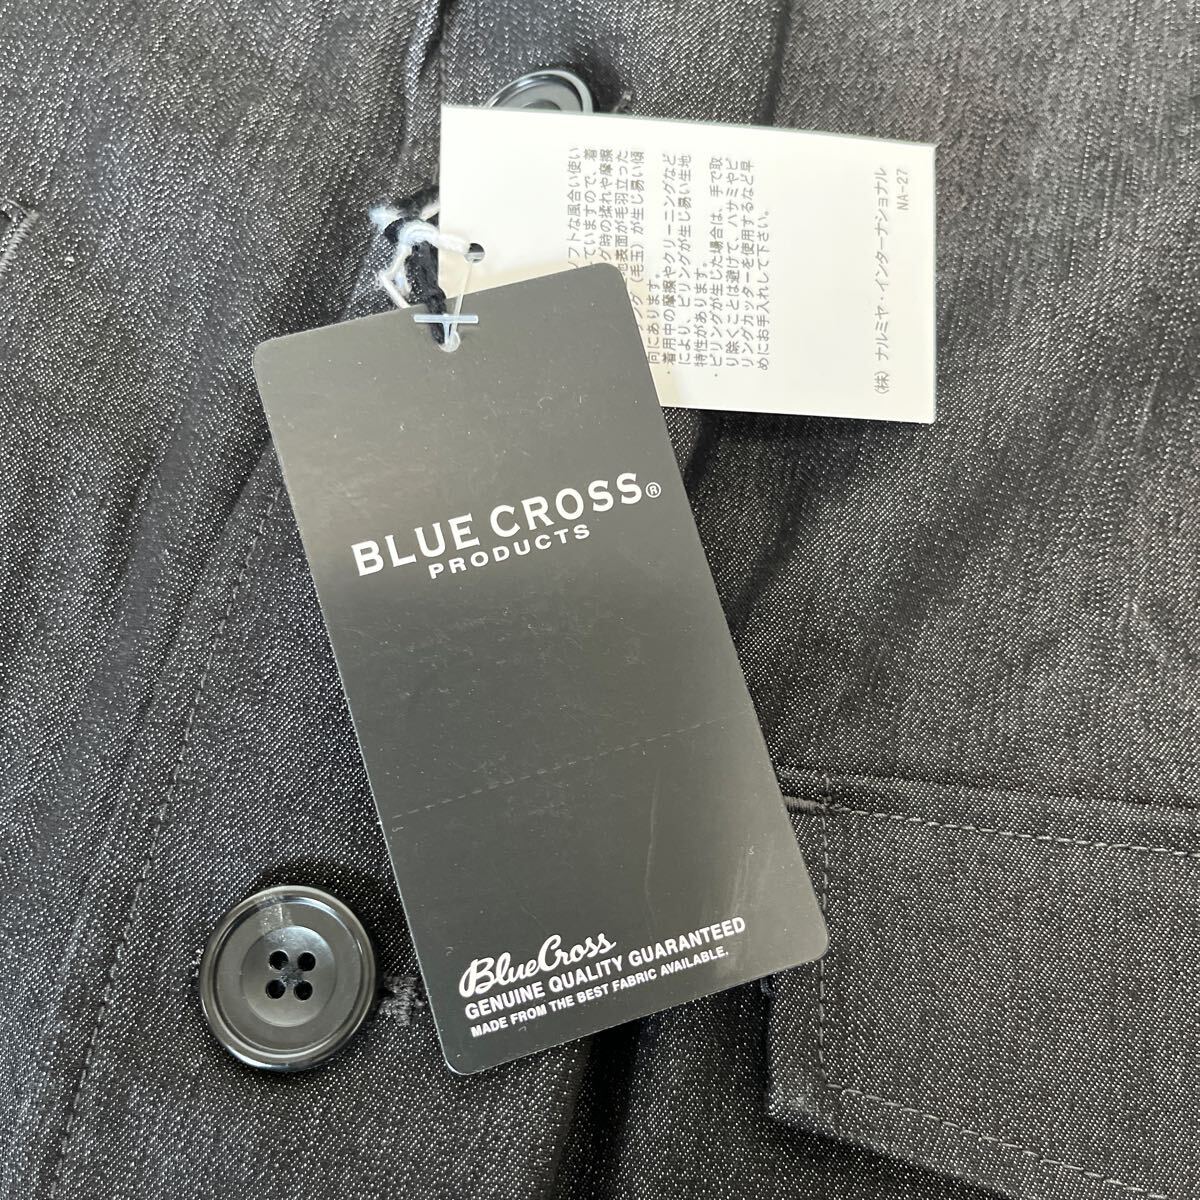 5-6 new goods BLUE CROSS black Denim stretch jacket tailored Denim jacket Kids LL 170 18,800 jpy + tax Narumi ya